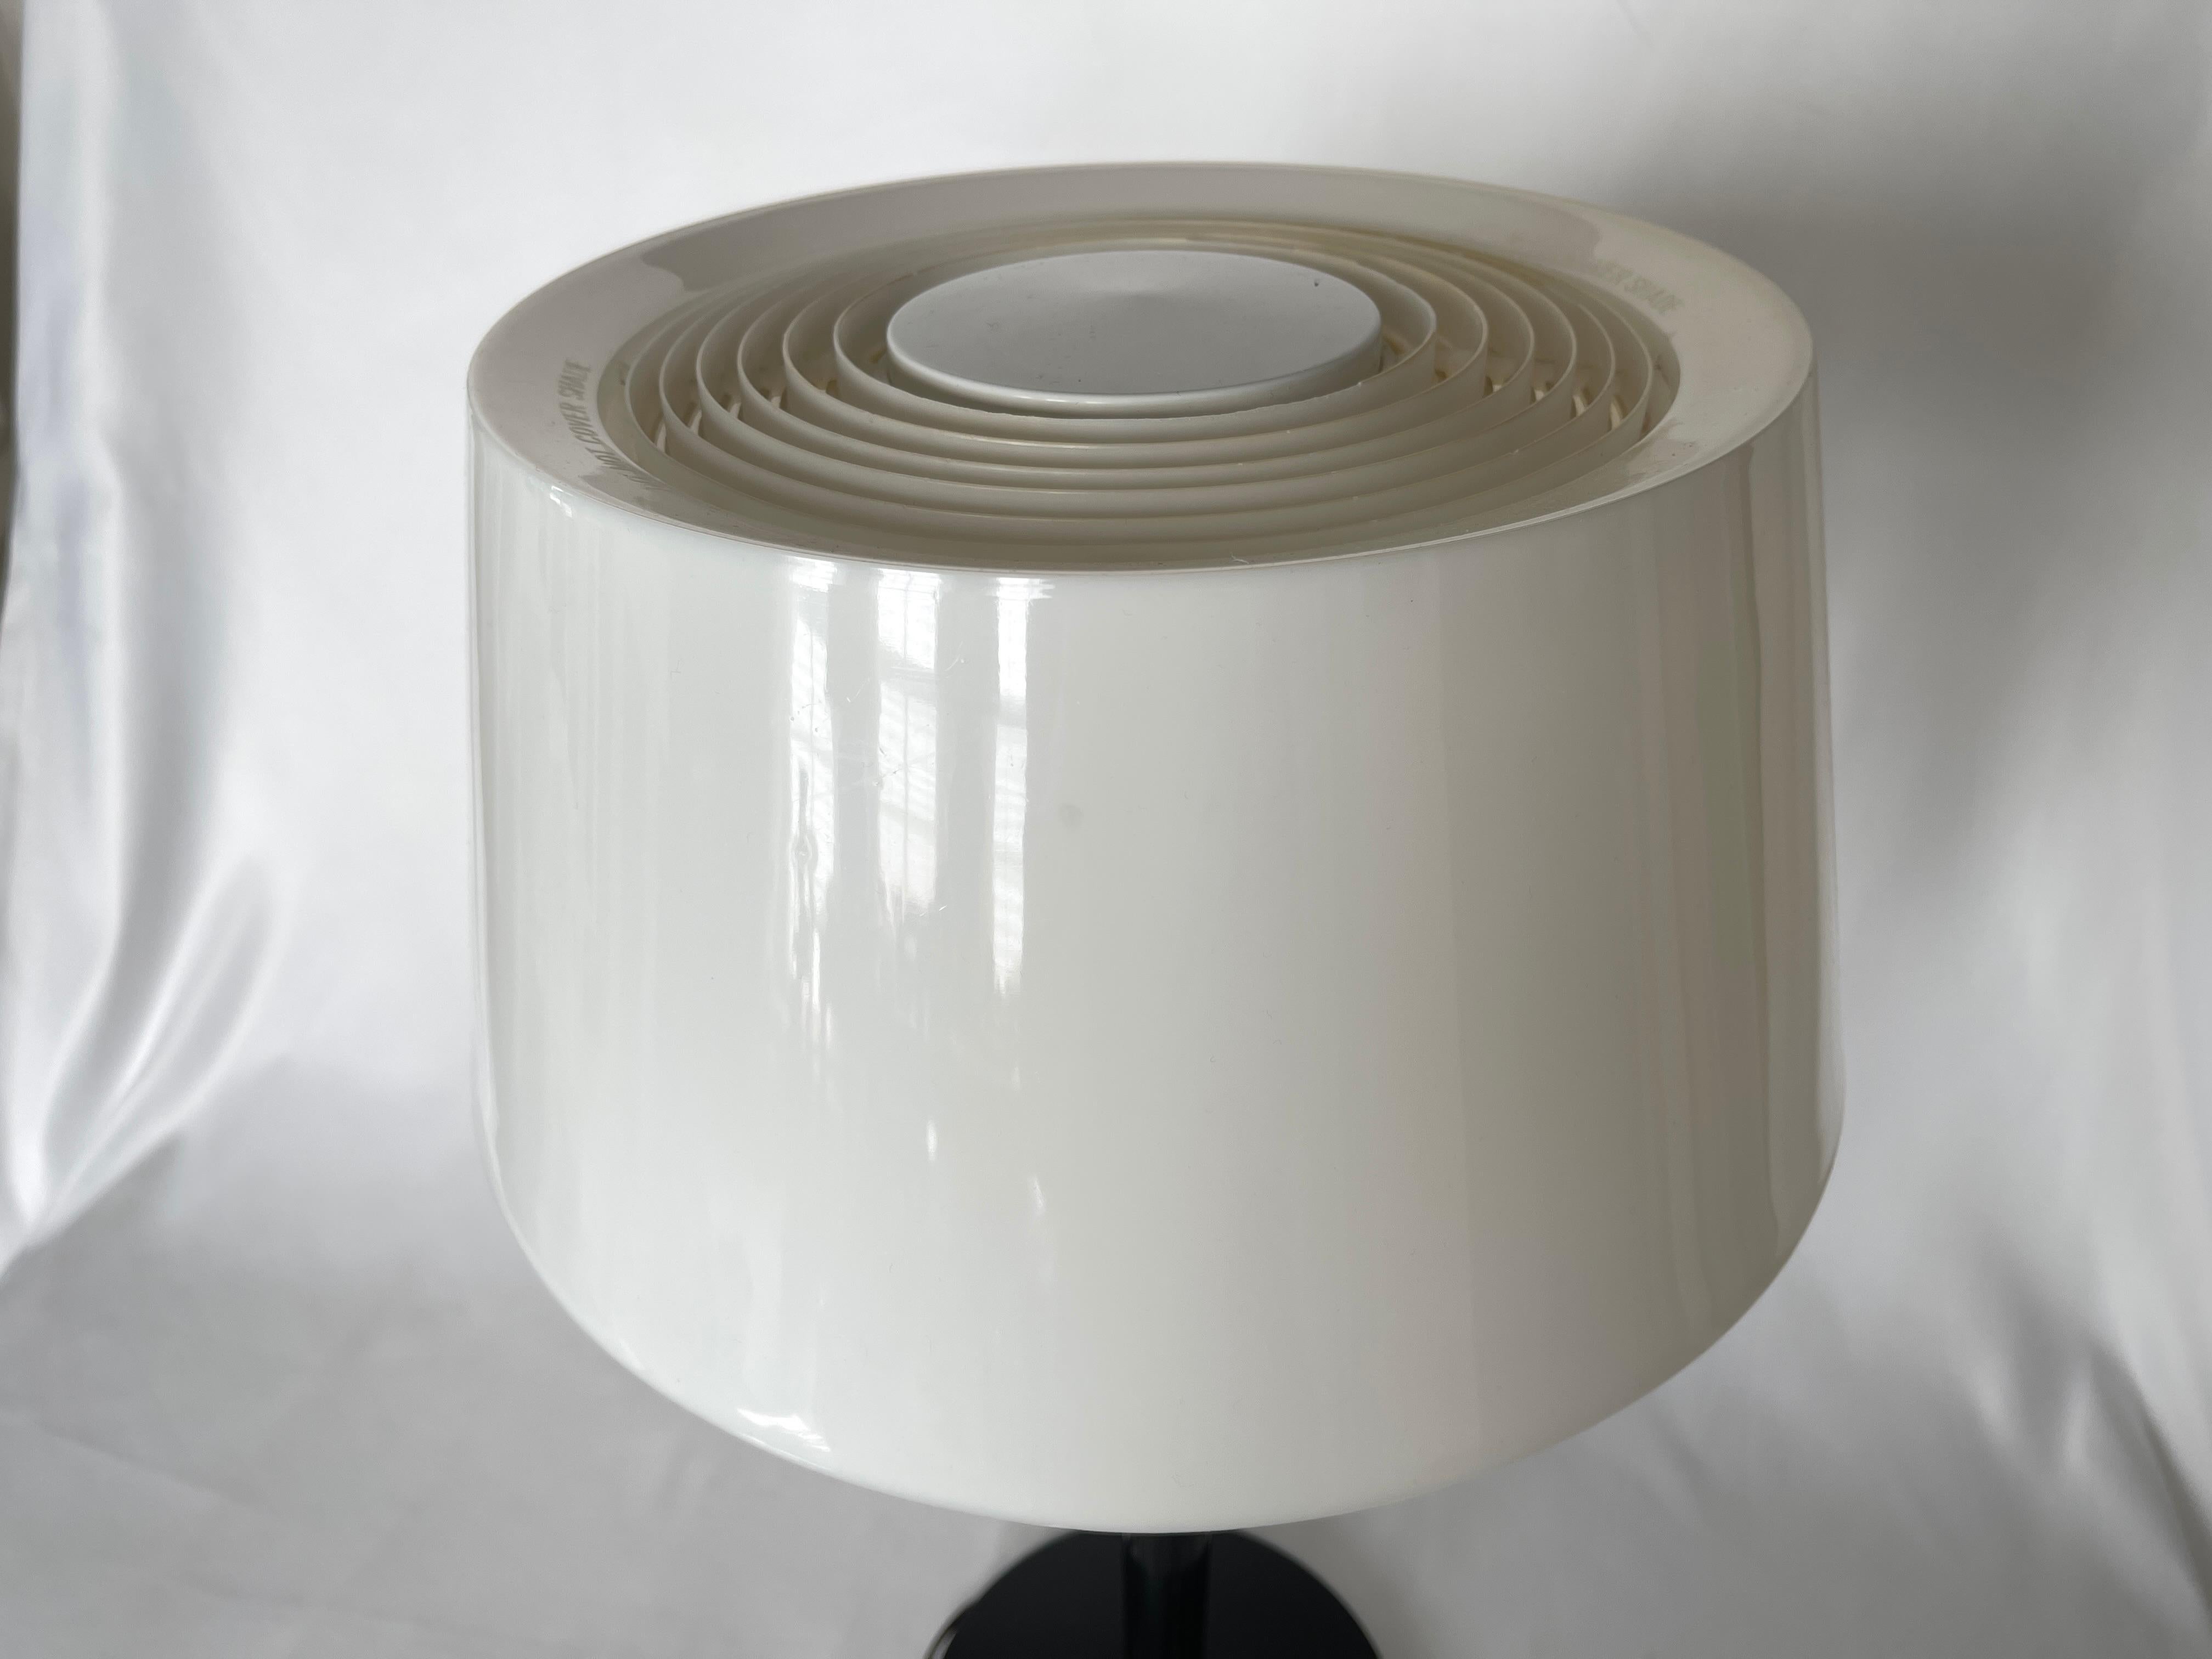 Gerald Thurston für Lightolier basic concept Tischleuchte mit schwarz lackiertem Stahlsockel und Lampenstiel, weißem Acryltrommelschirm und Kunststoffdiffusor darunter. Lampenschalter aus Metall am Sockel. 
Hergestellt in den USA in den 1970er